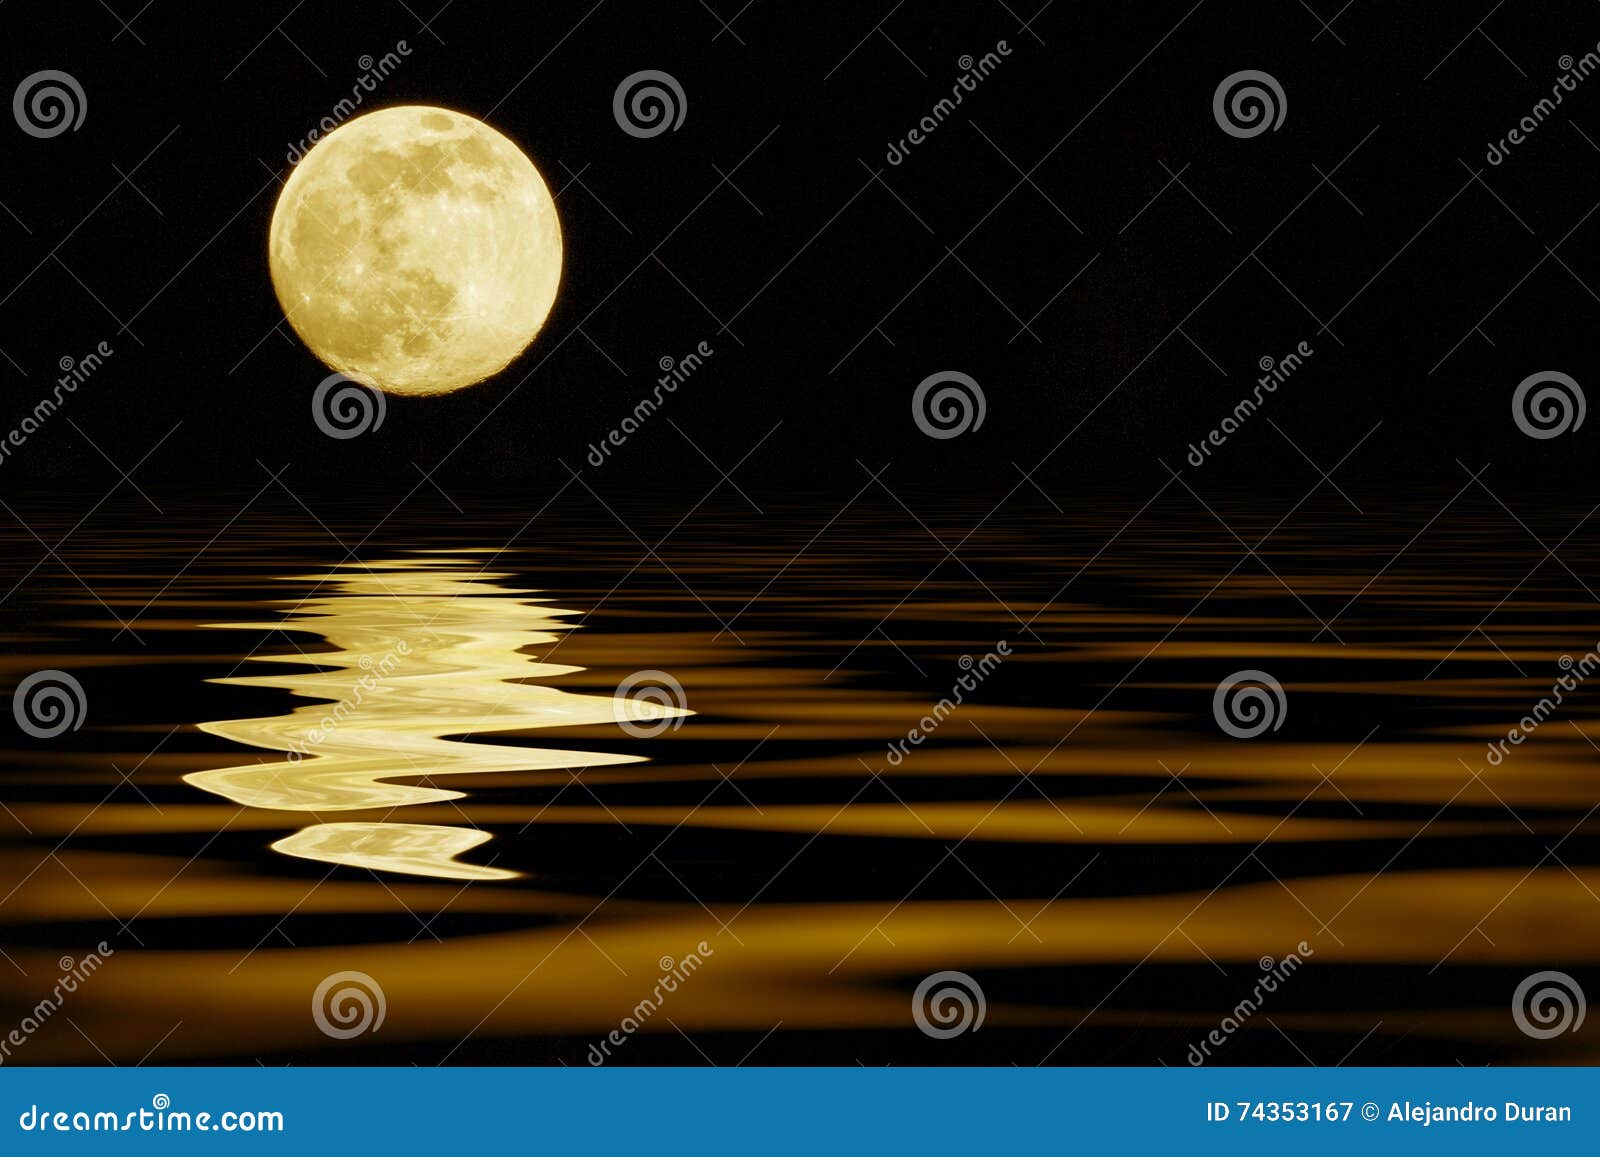 yellow moon over sea